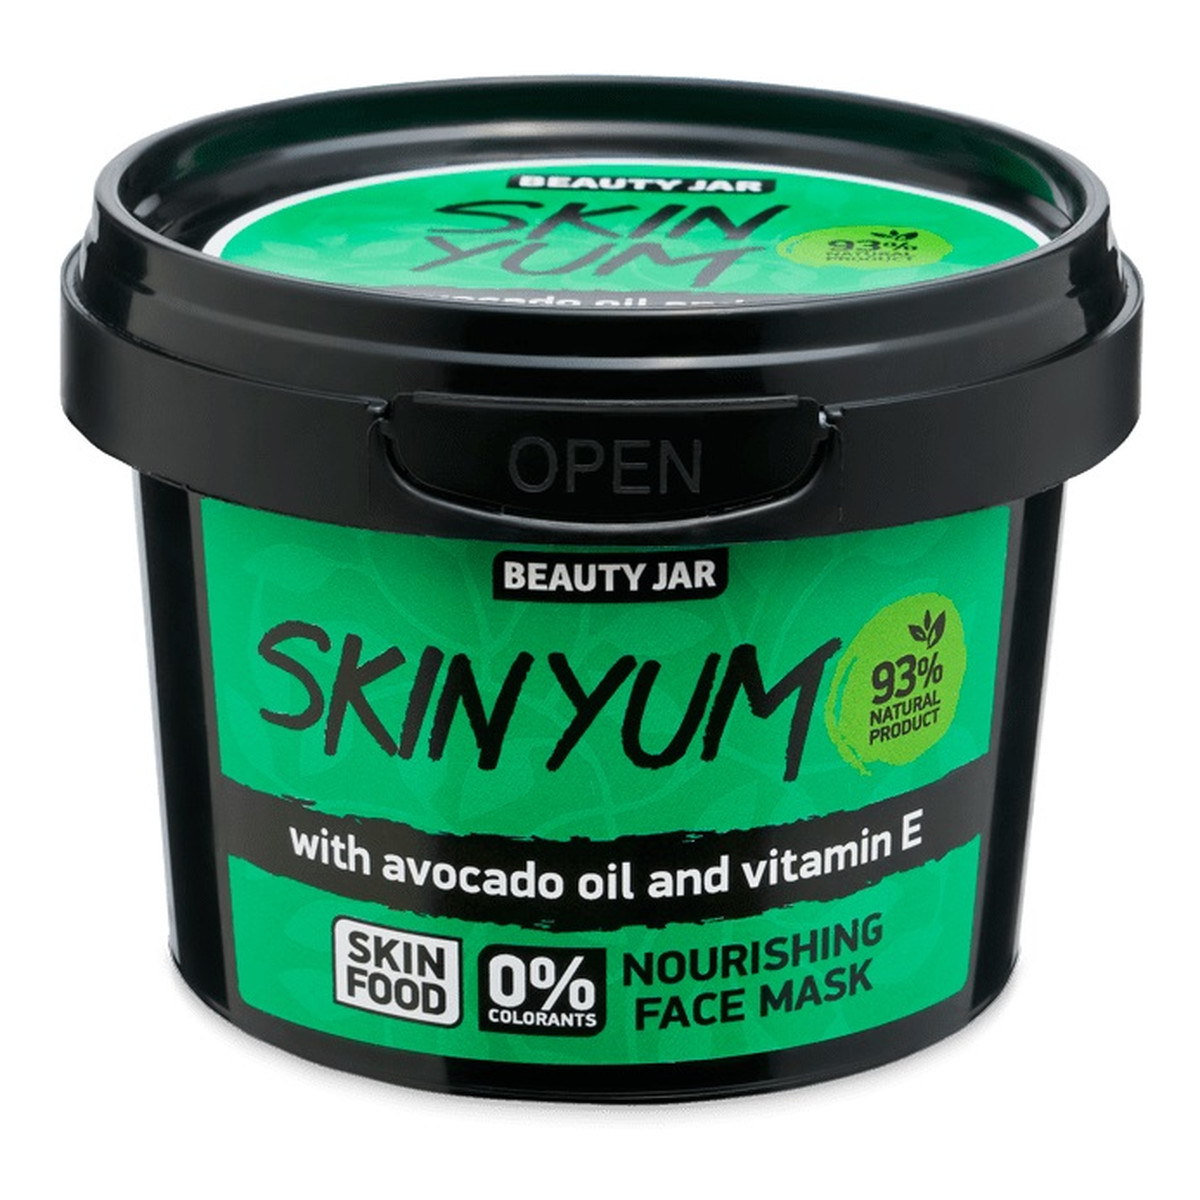 Beauty Jar Skin yum odżywcza maska do twarzy 120g